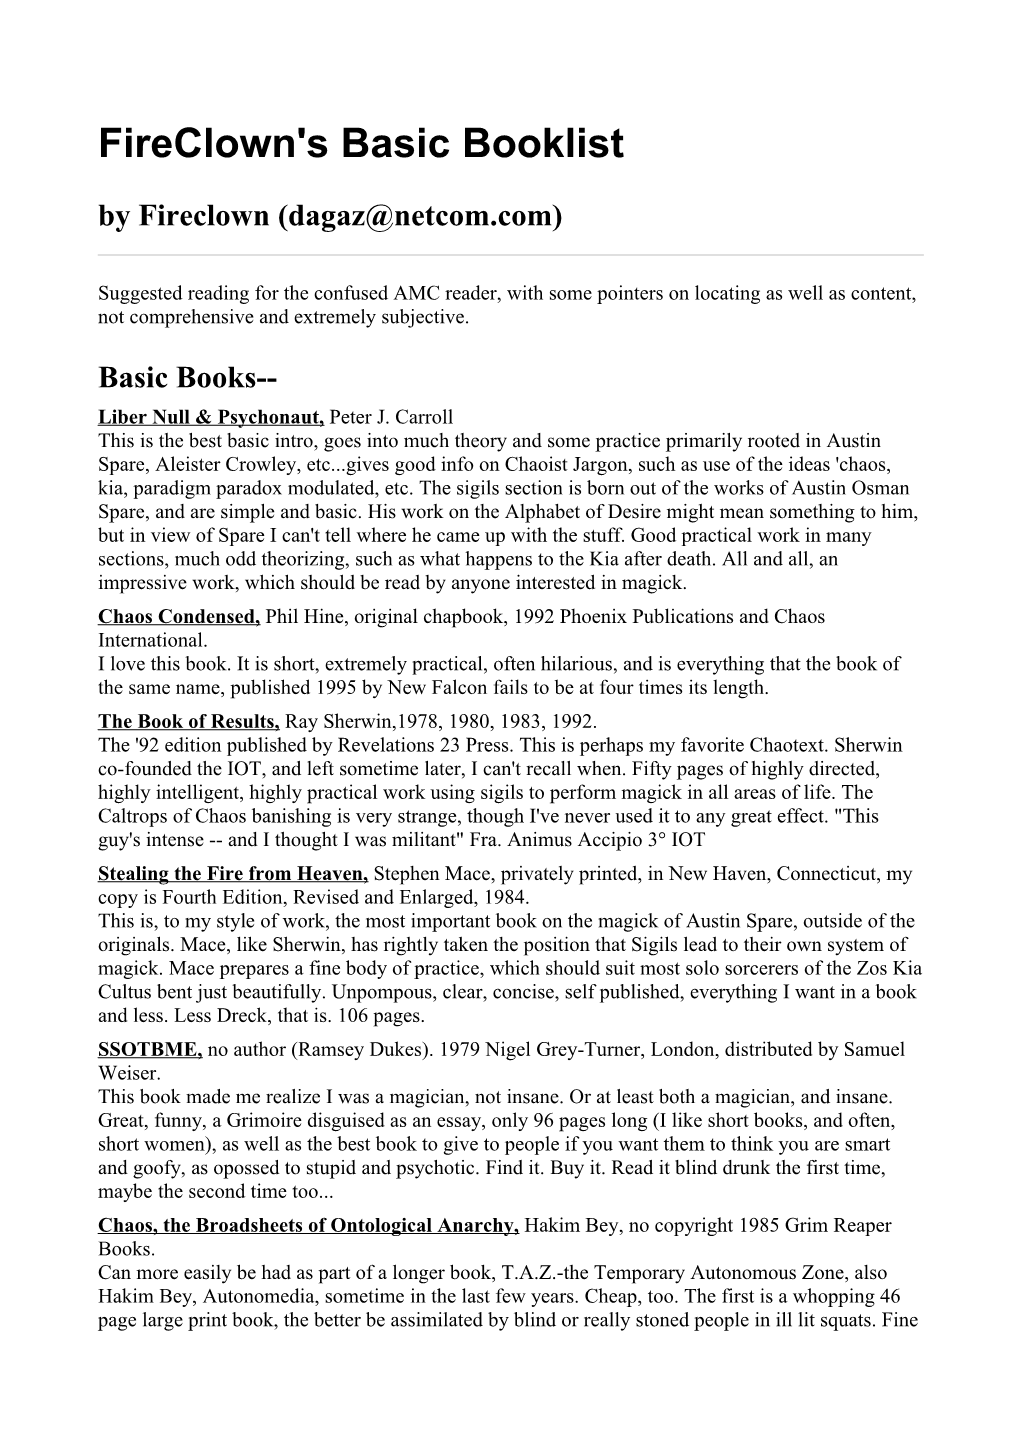 Fireclown's Basic Booklist by Fireclown (Dagaz@Netcom.Com)